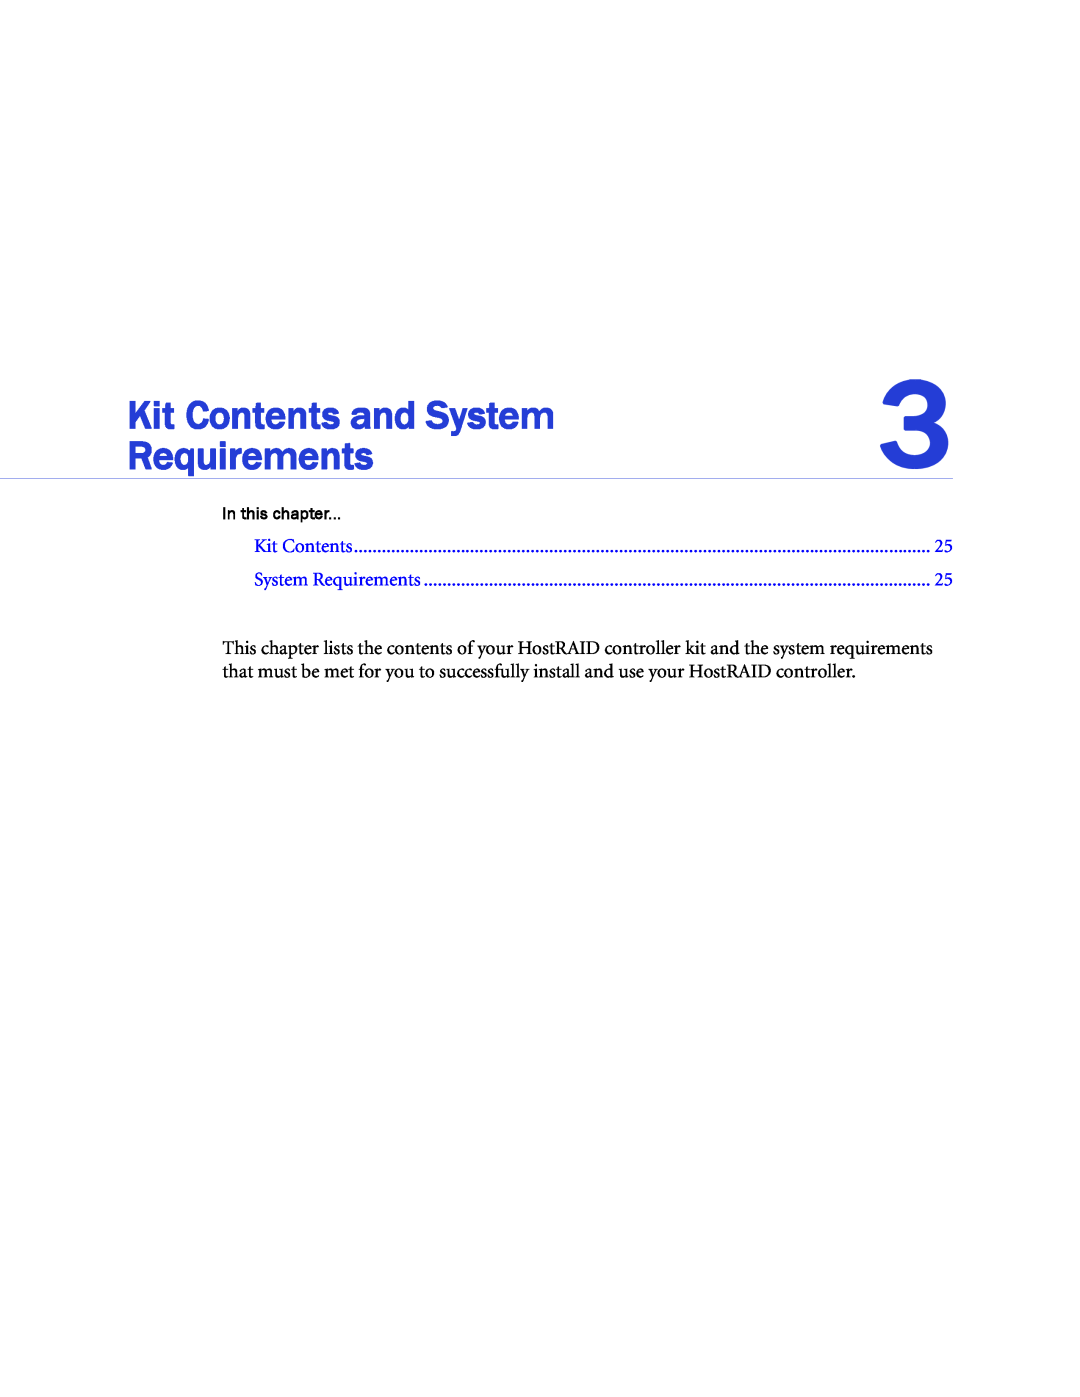 Adaptec 1220SA, 58300, 44300, 48300, 1420SA, 1225SA, 1430SA Kit Contents and System, In this chapter, System Requirements 